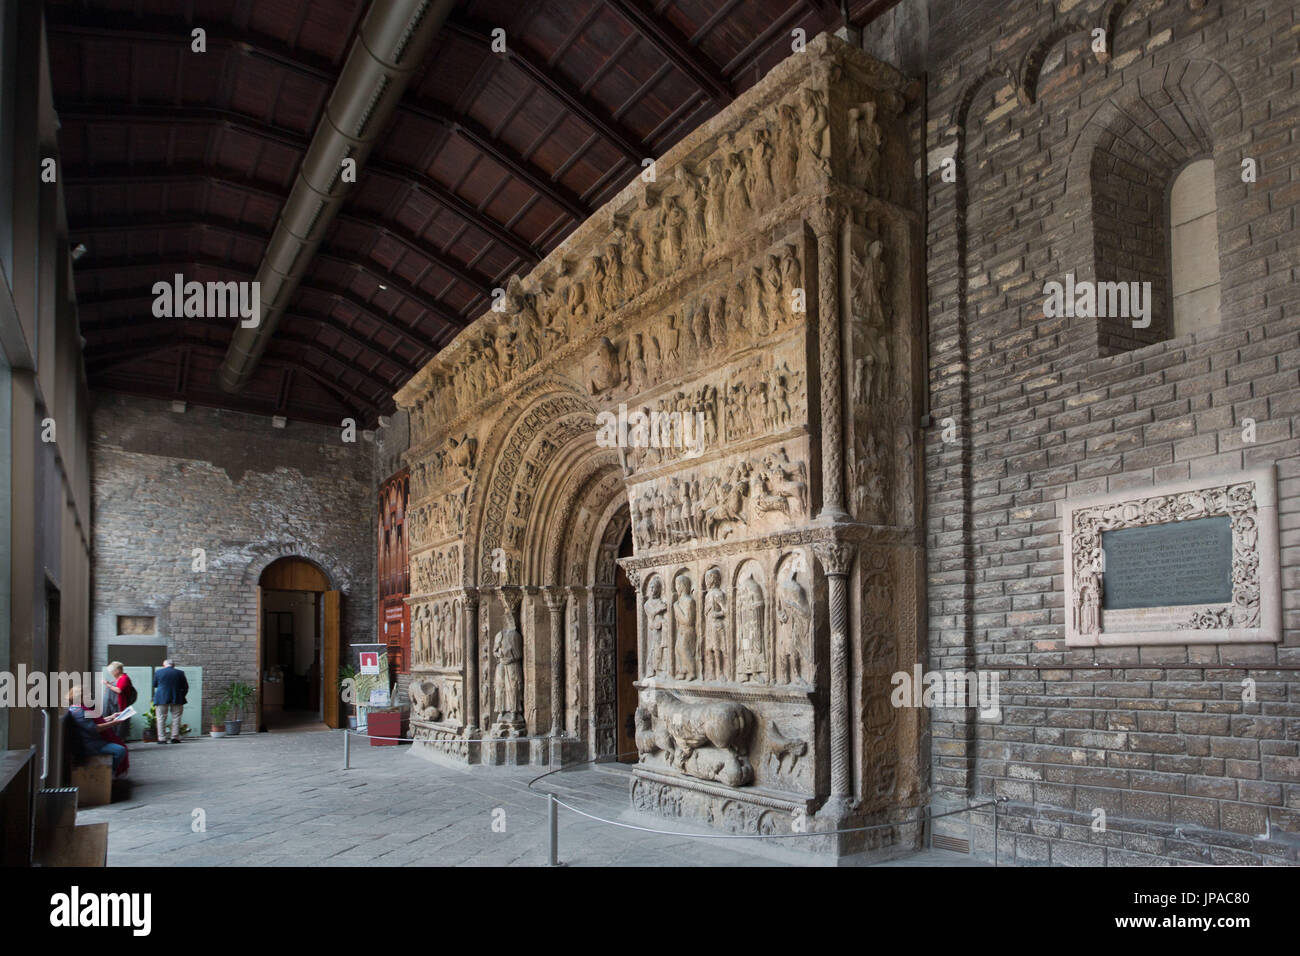 Espagne, Catalogne, province de Gérone, de la ville de Ripoll, Santa Maria de Ripoll monastère du XII siècle, portique roman catalan Banque D'Images